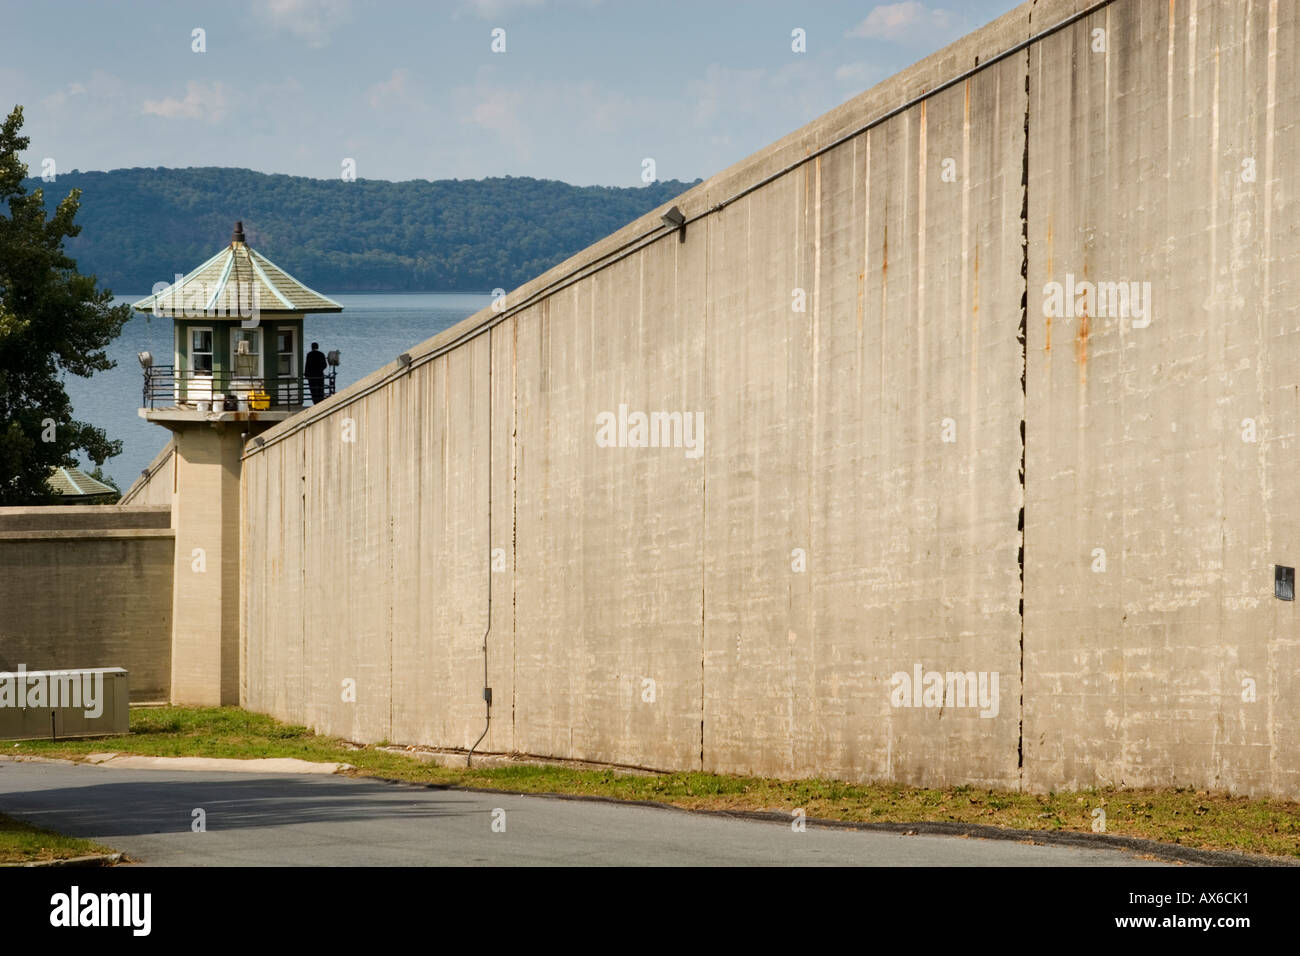 La prison de Sing Sing légendaire jusqu'à la rivière Ossining New York Westchester County on the Hudson Banque D'Images